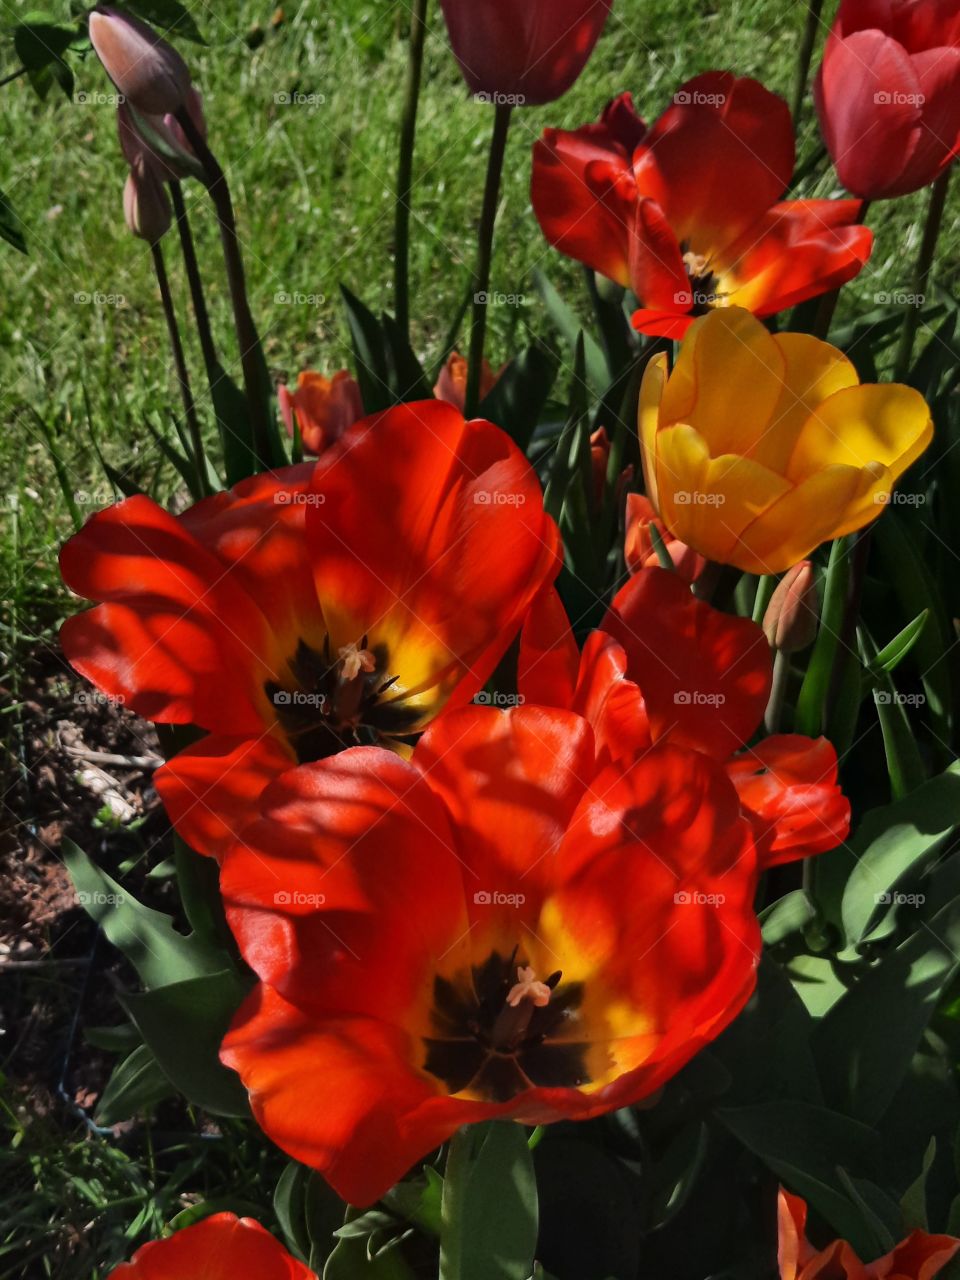 open flowers of sunlit tulips in spring garden